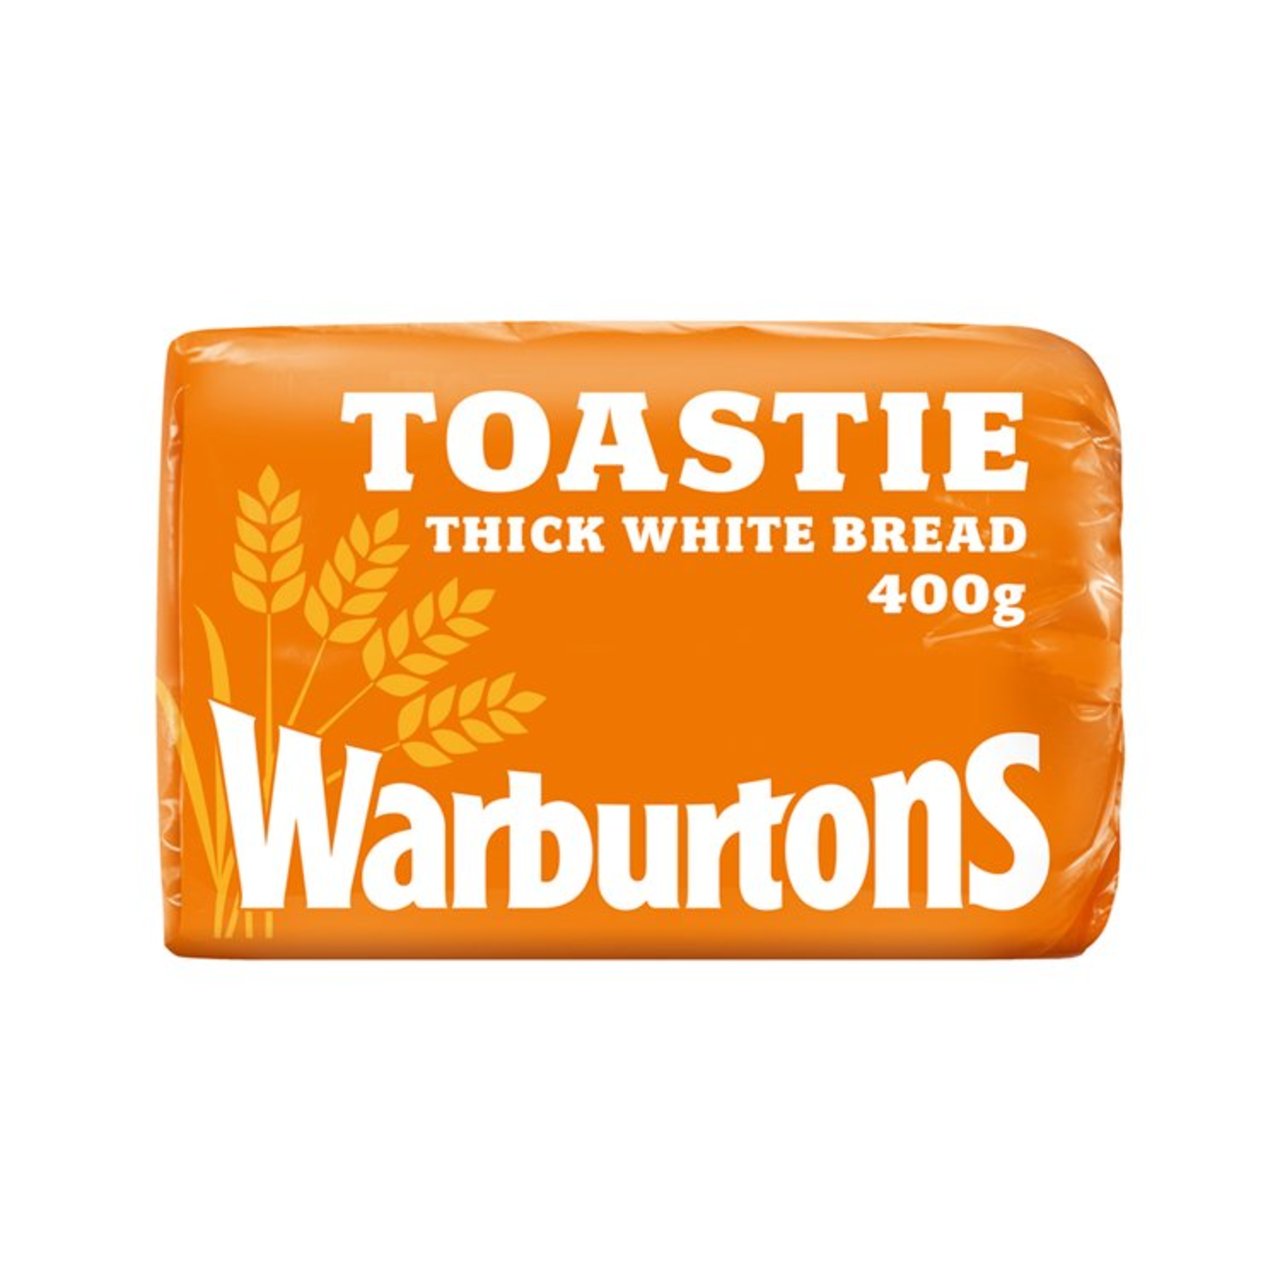 Warburtons 400g Toastie White Loaf